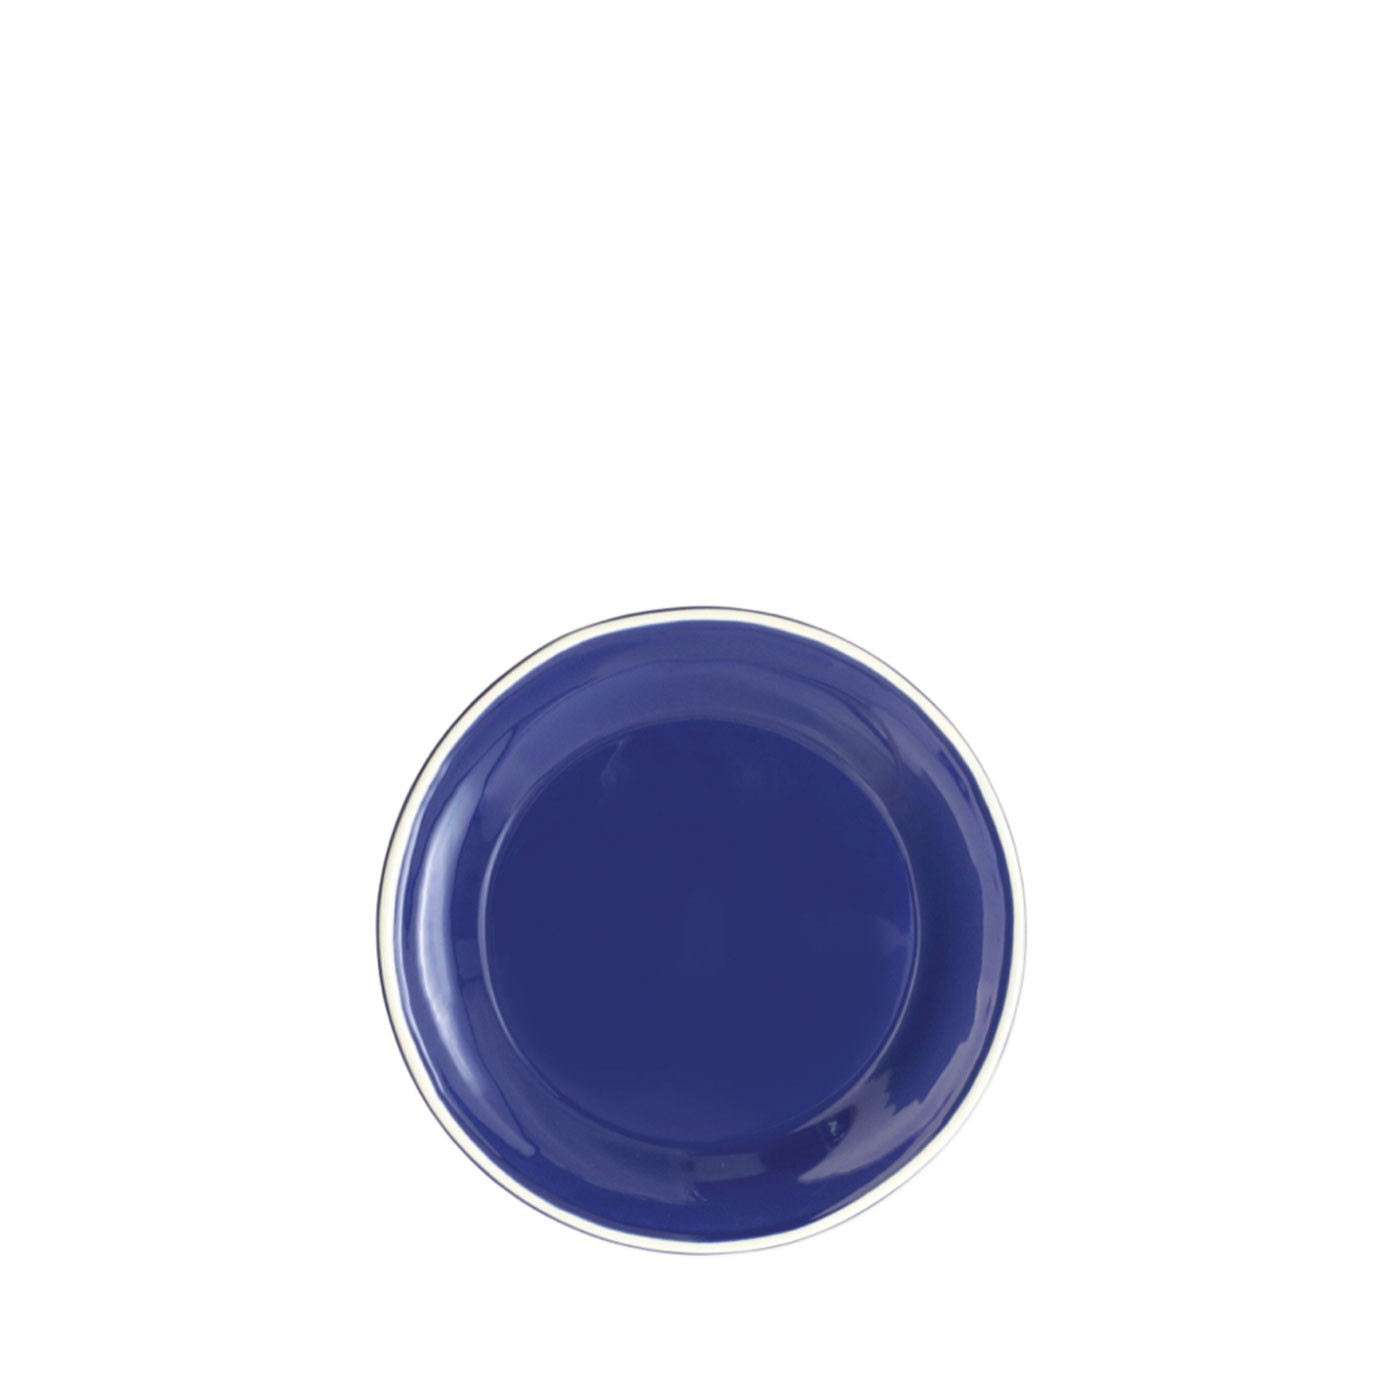 Chroma Blue Salad Plate - Vietri | Eataly.com